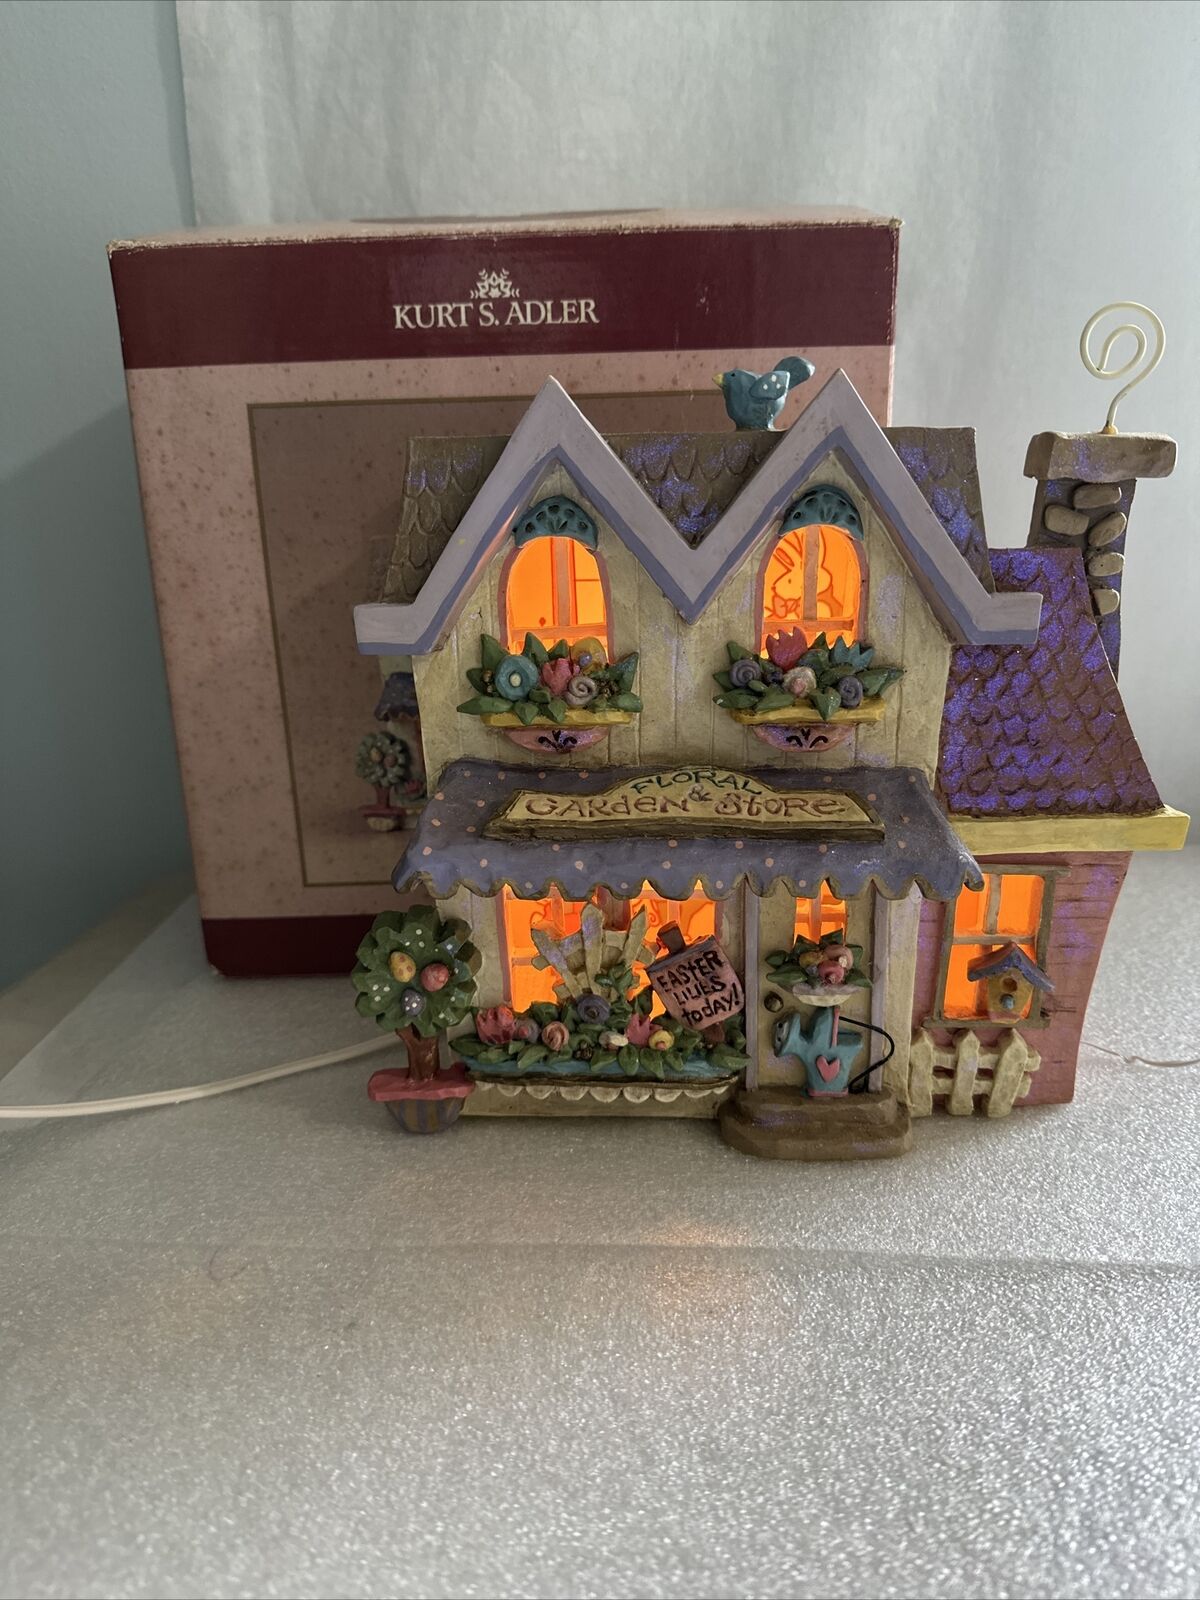 Kurt S. Adler Easter Village Garden Store  Lighted House, original box